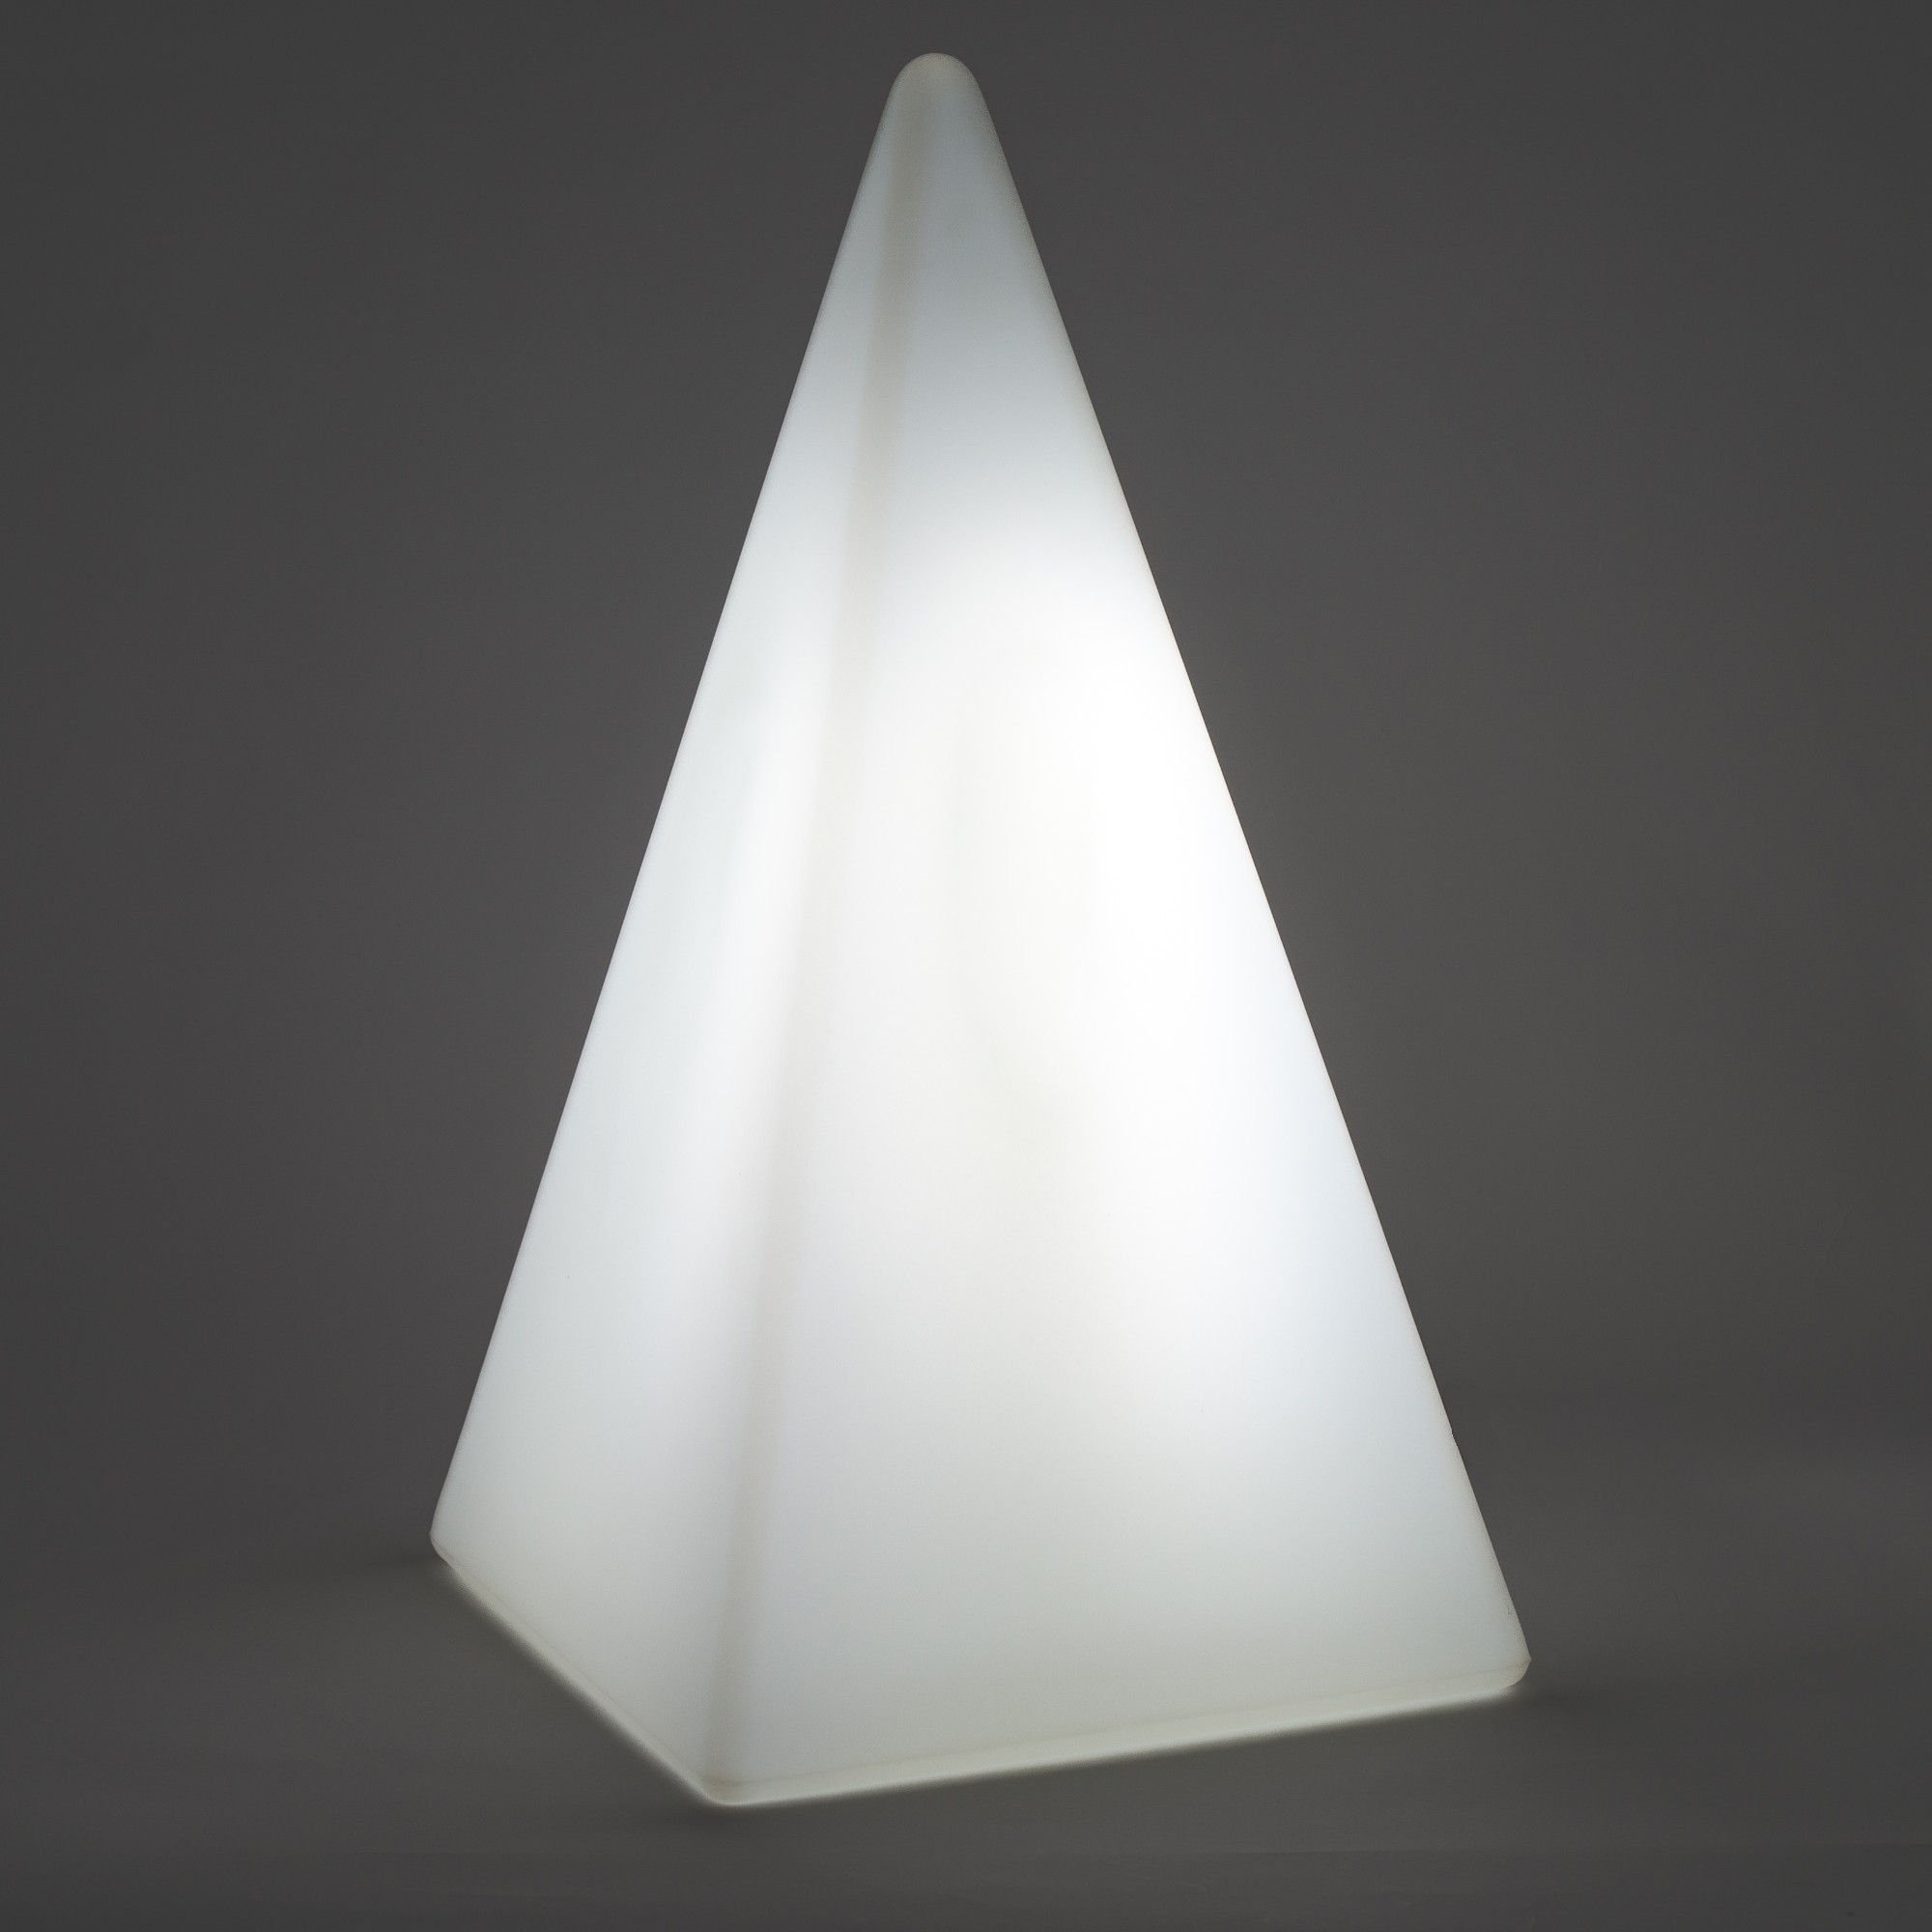 70106 Standleuchte Pyramide 36 cm der Firma EPSTEIN Design Leuchten